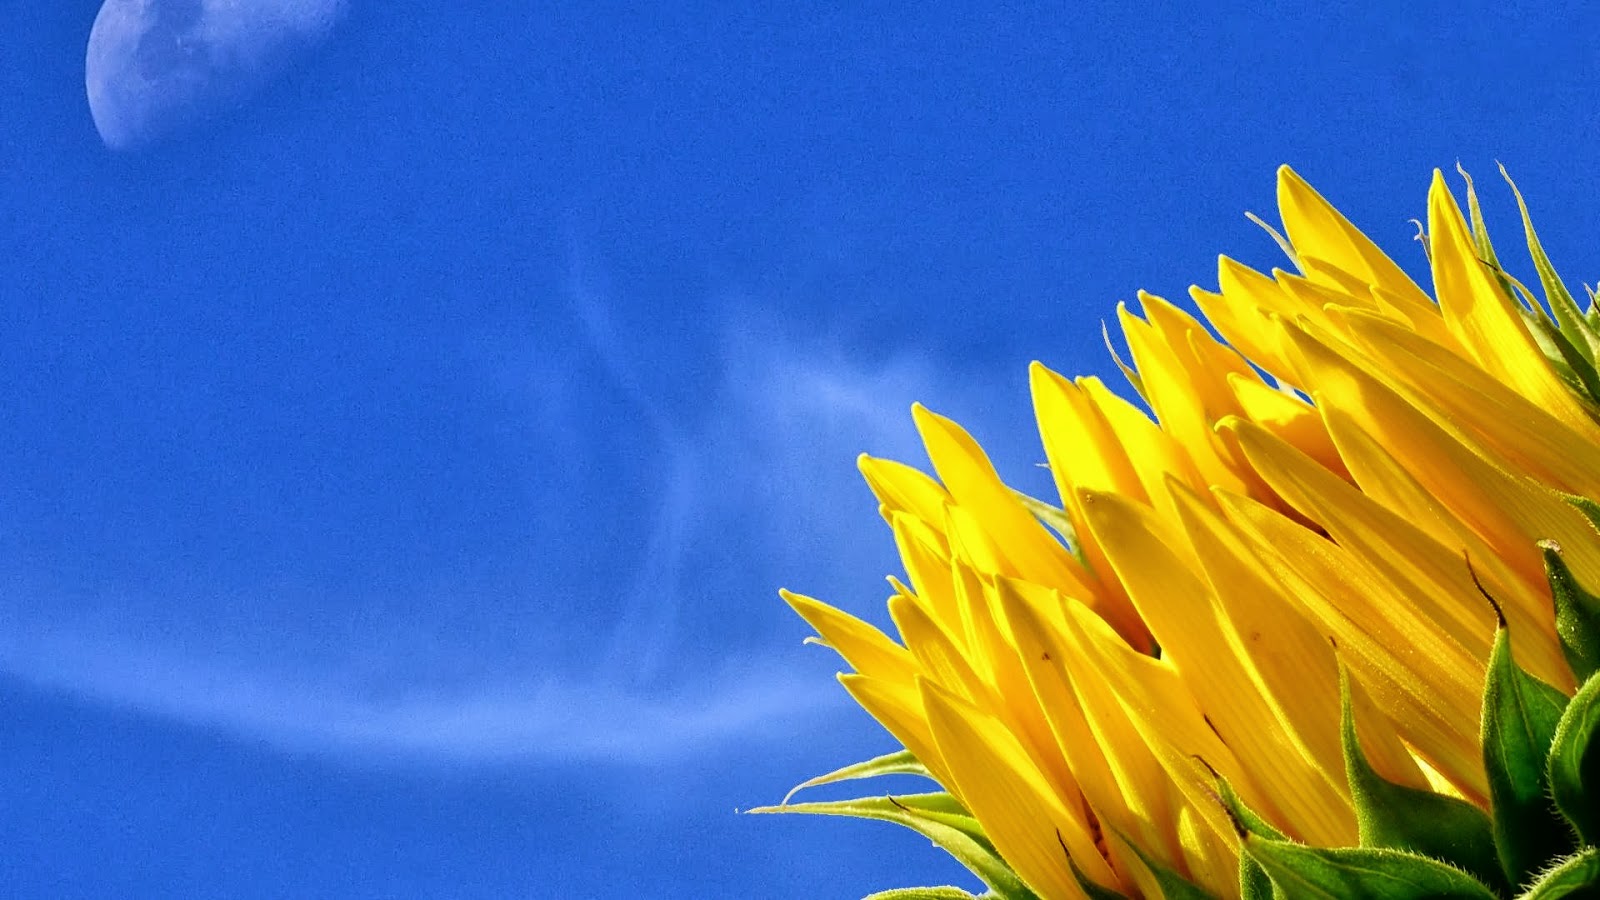 wallpaper bunga cantik,sunflower,sky,blue,yellow,flower